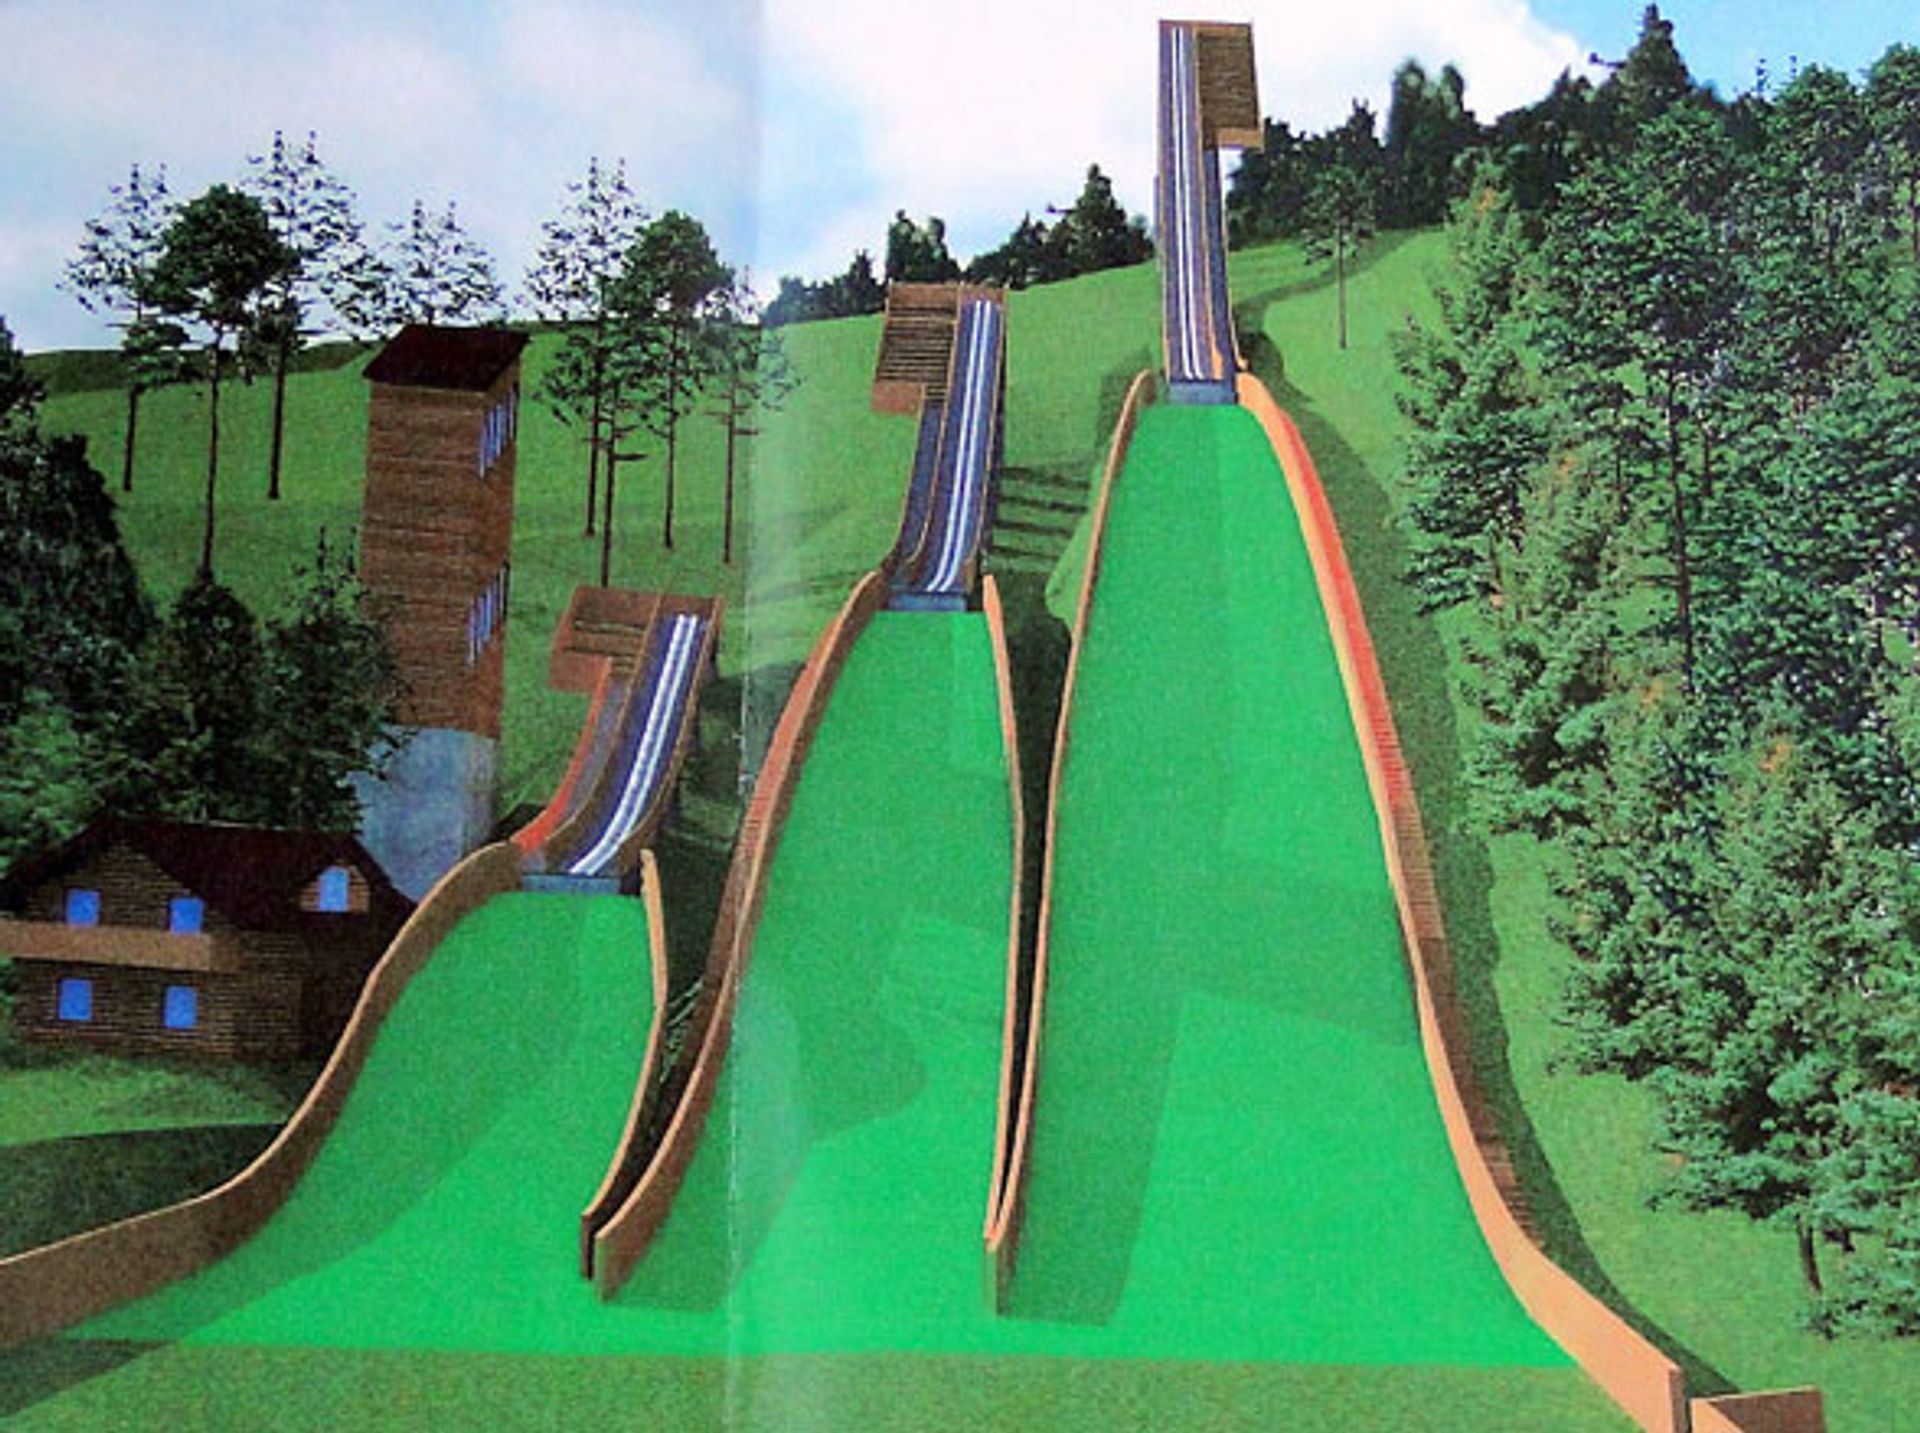  Trzy nowe skocznie narciarskie w Wiśle będą gotowe w drugiej połowie tego roku